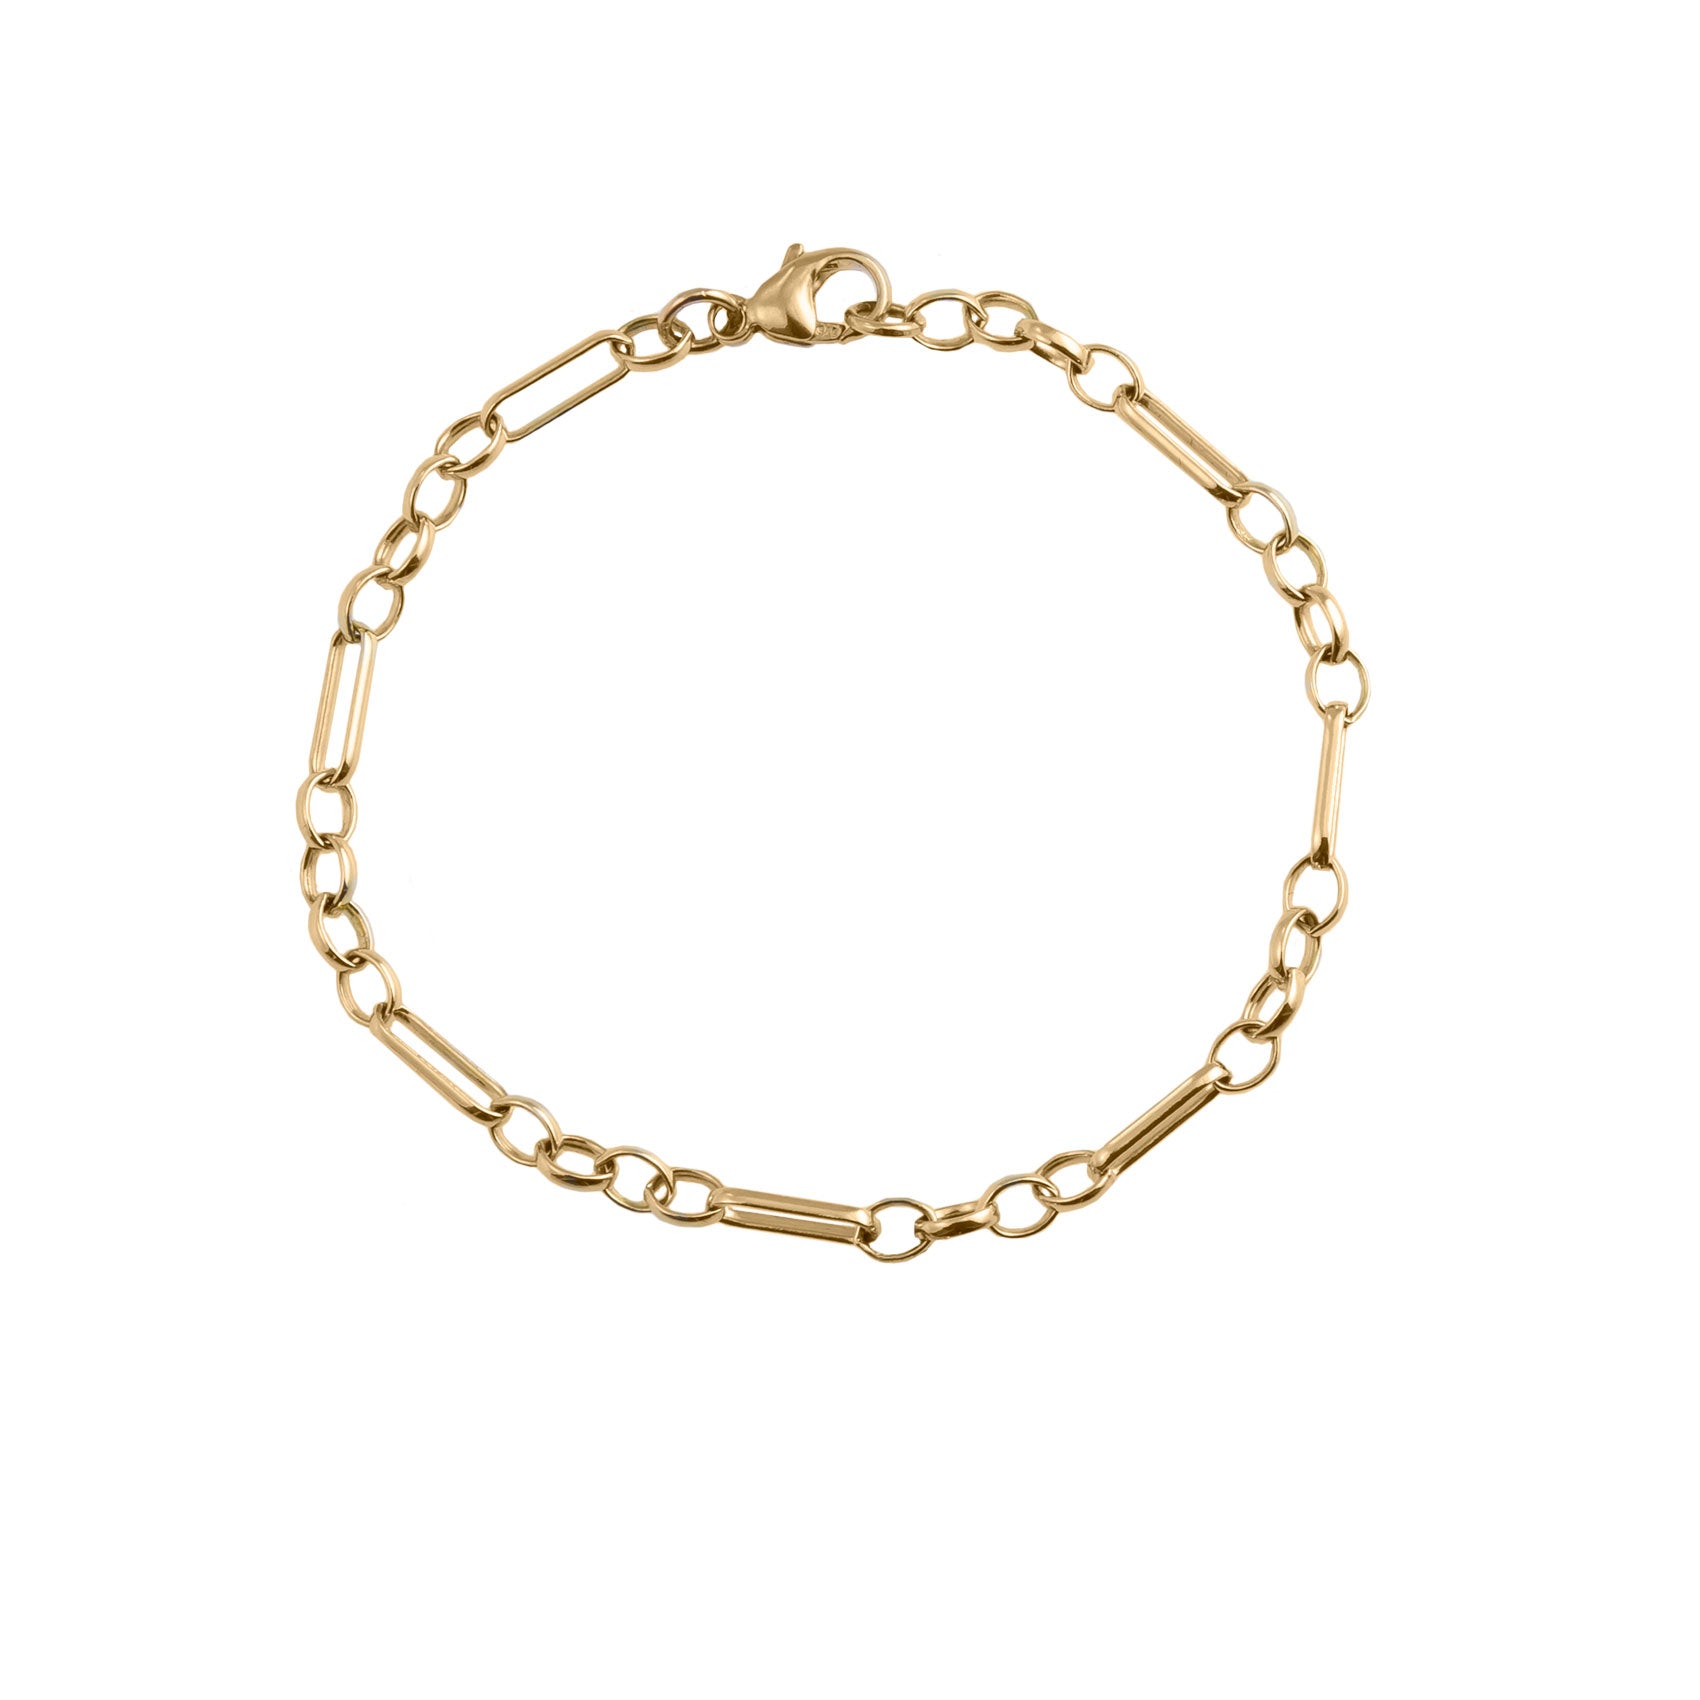 Buy Gold Chain Bracelet Basic Chain Bracelet, Gold Bracelet, Thin Chain  Bracelet, Dainty Bracelet, Layering Bracelet, Simple Plain Chain Online in  India - Etsy